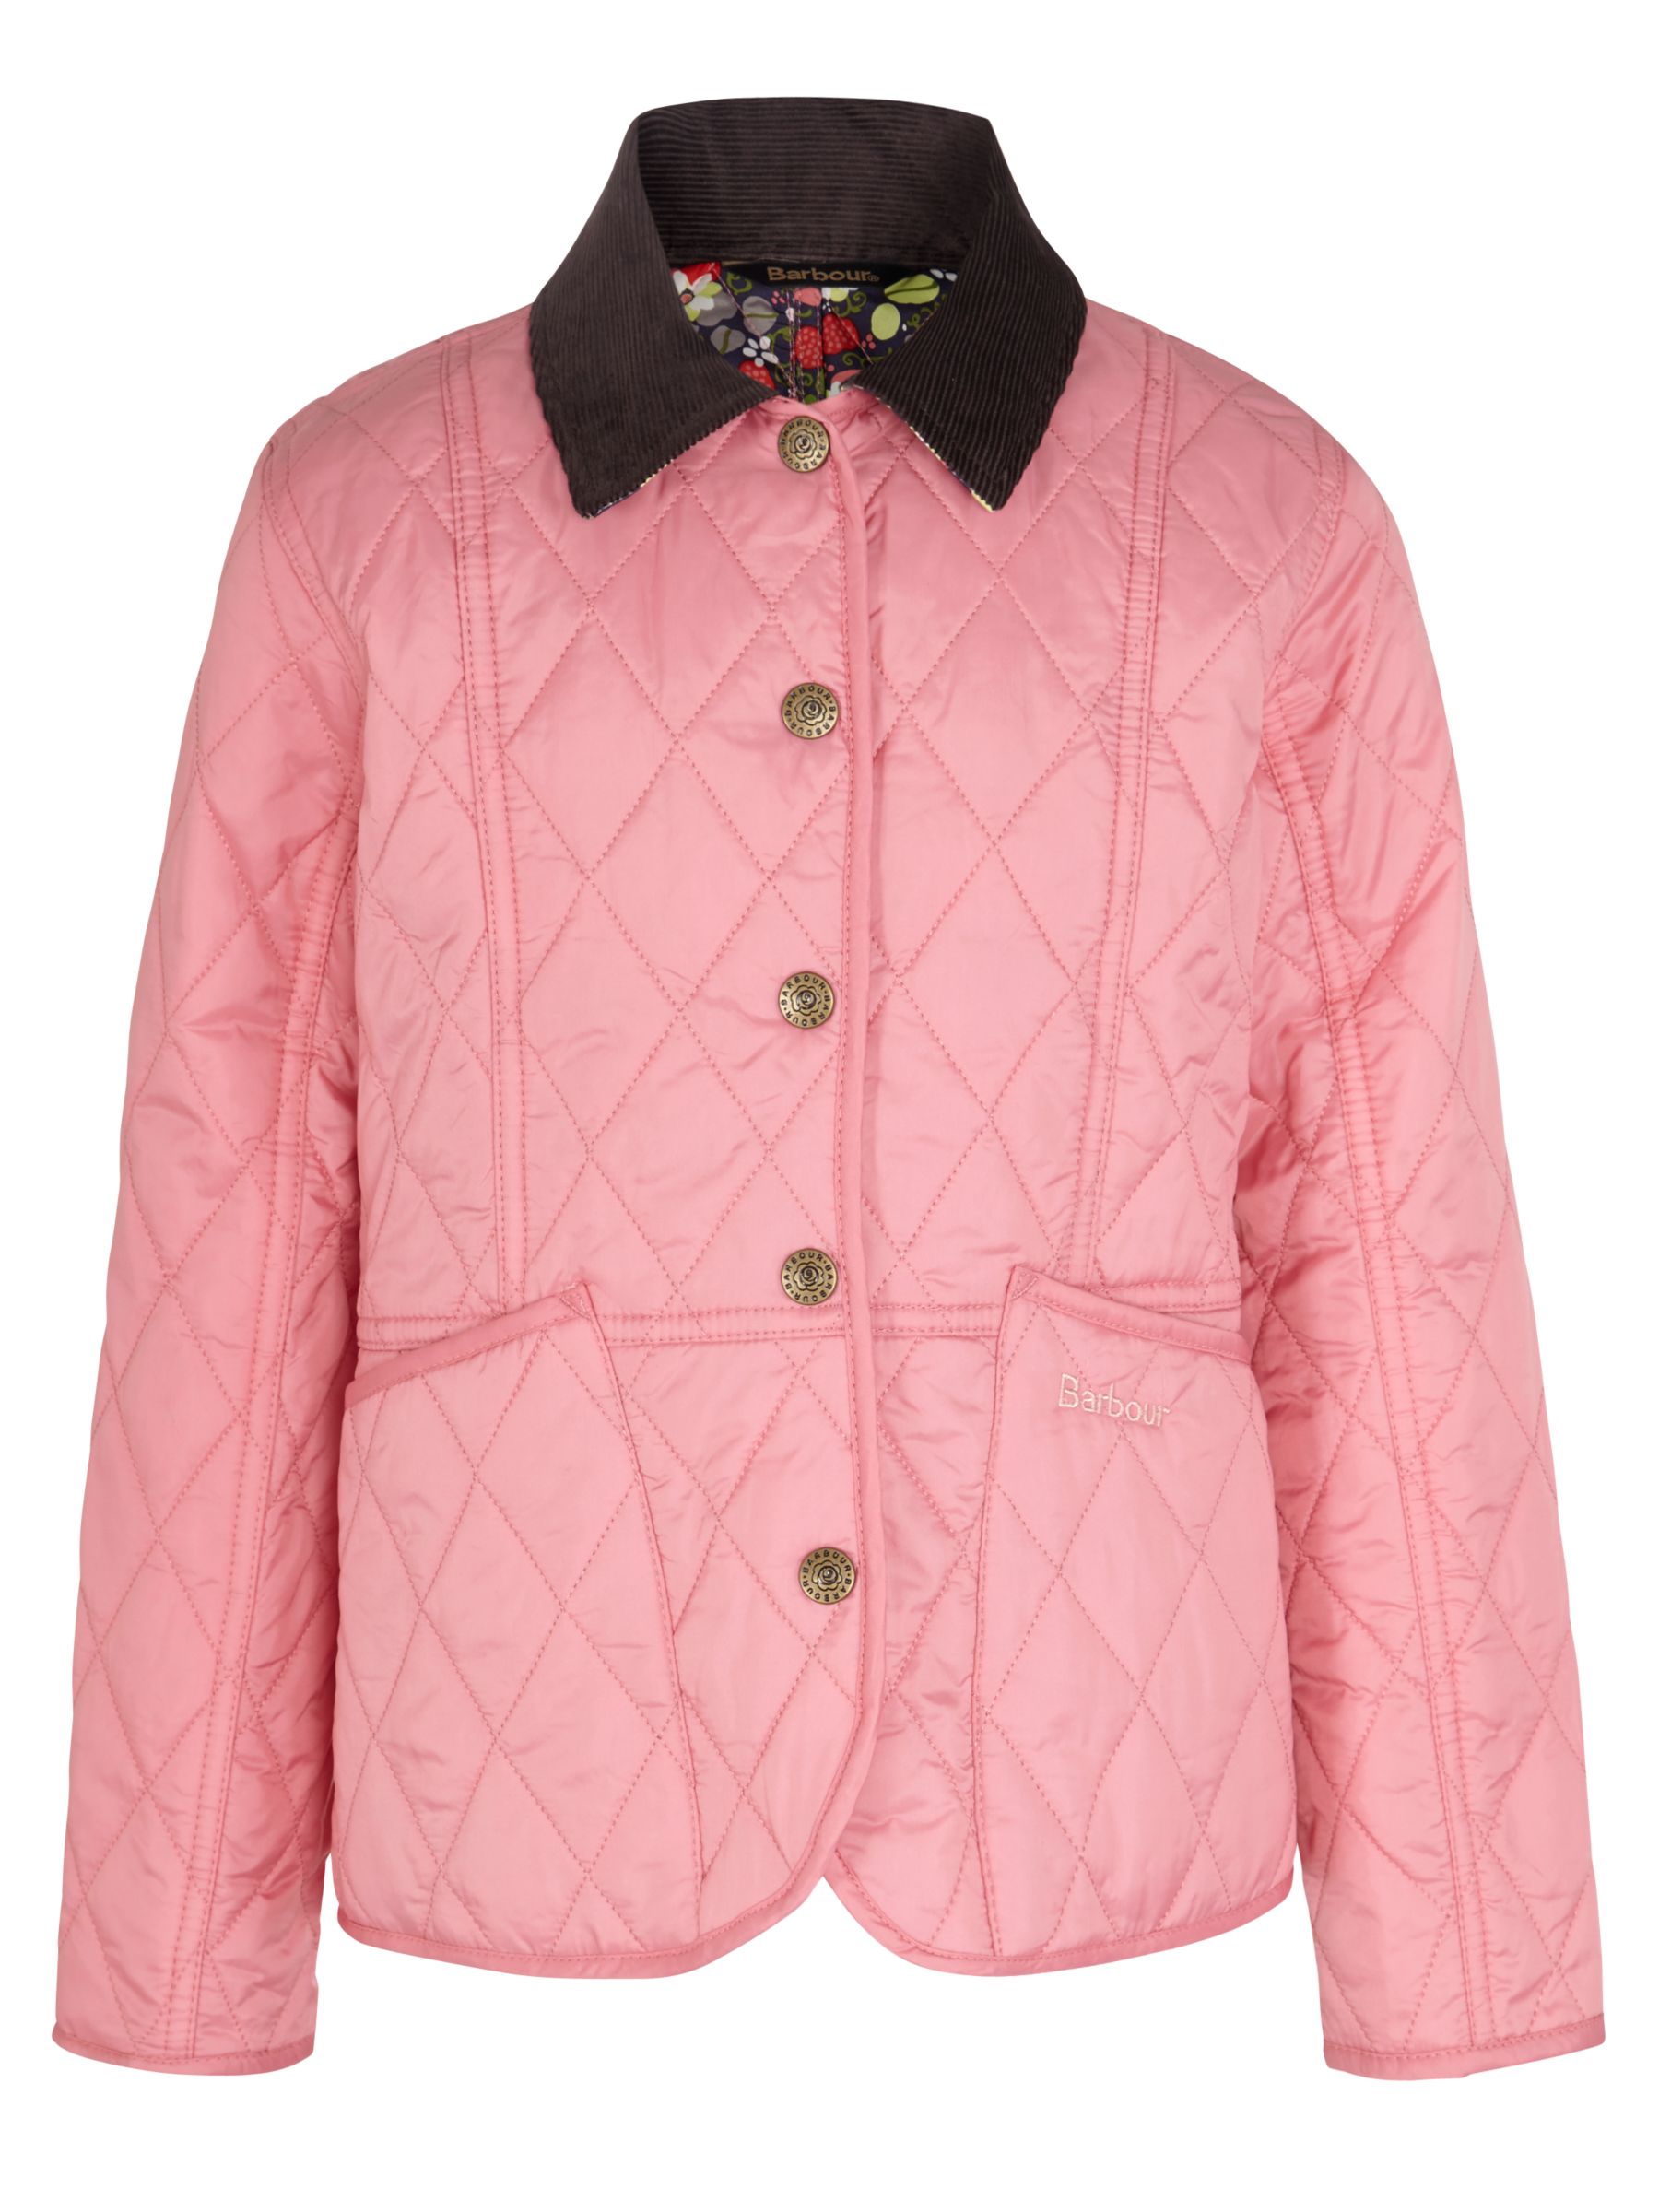 barbour ladies pink jacket